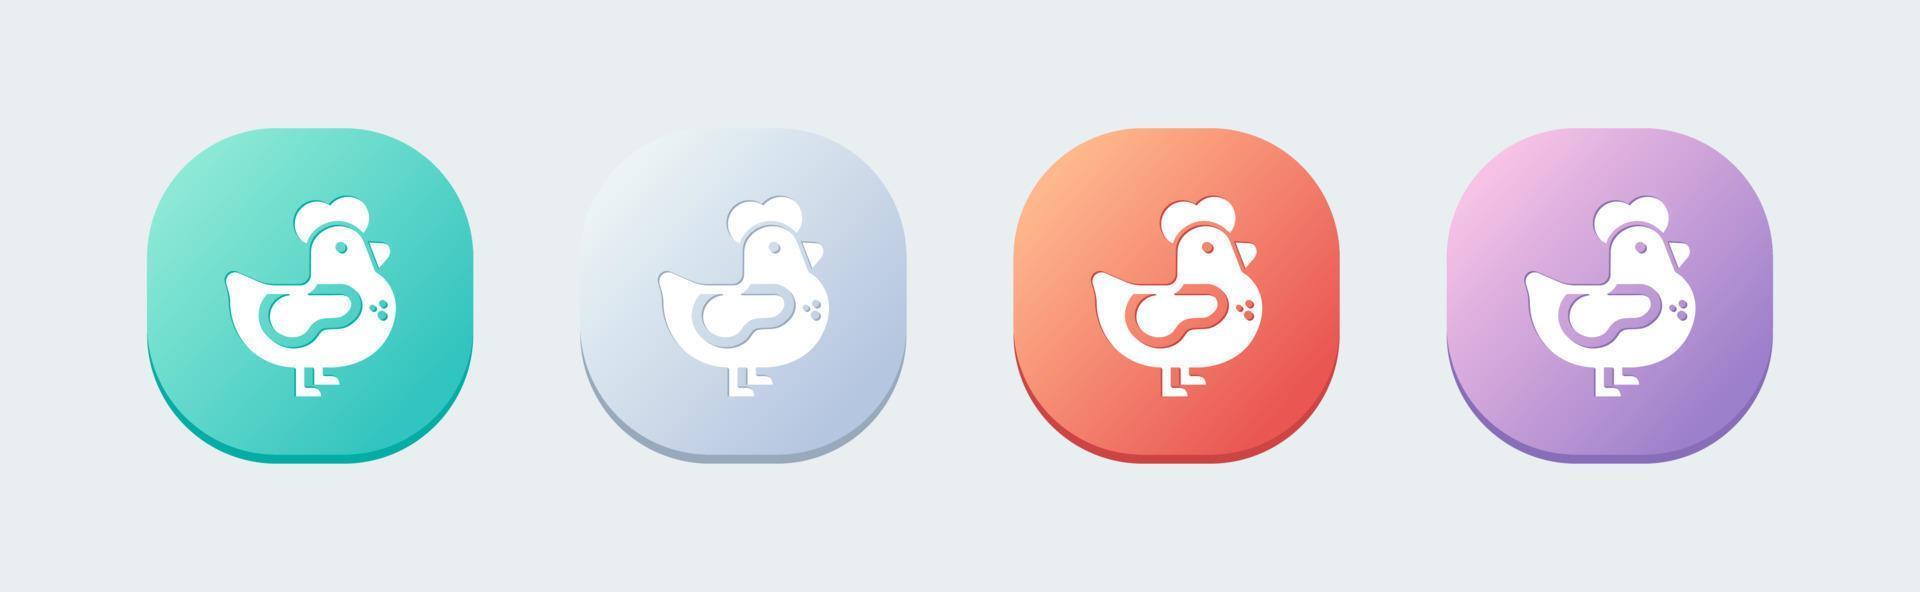 icona di pollo solido in stile design piatto. illustrazione vettoriale di segni di gallina.